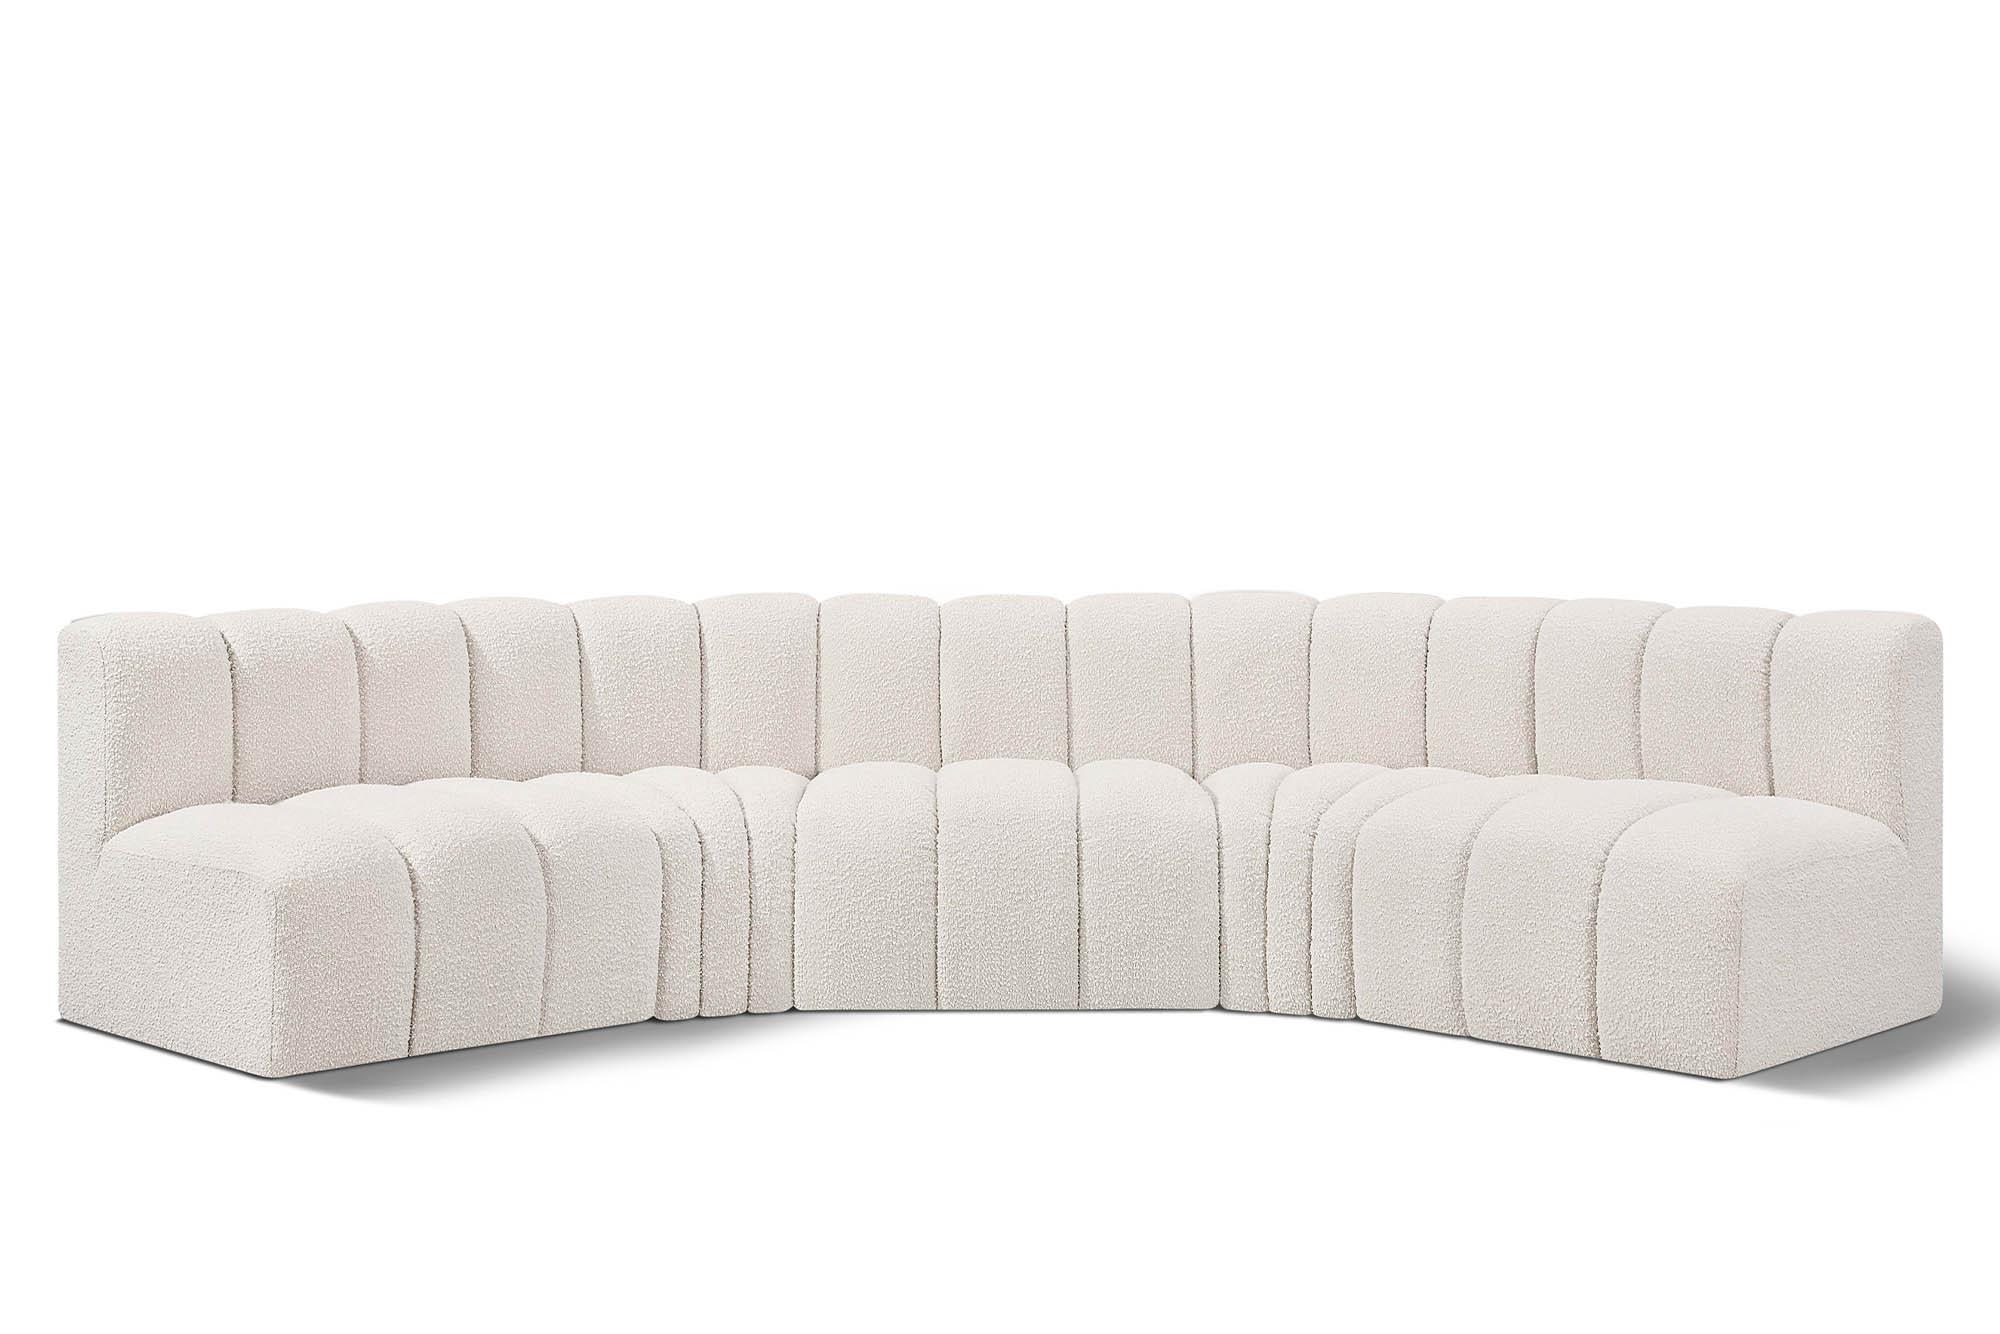 Contemporary, Modern Modular Sectional Sofa ARC 102Cream-S5A 102Cream-S5A in Cream 